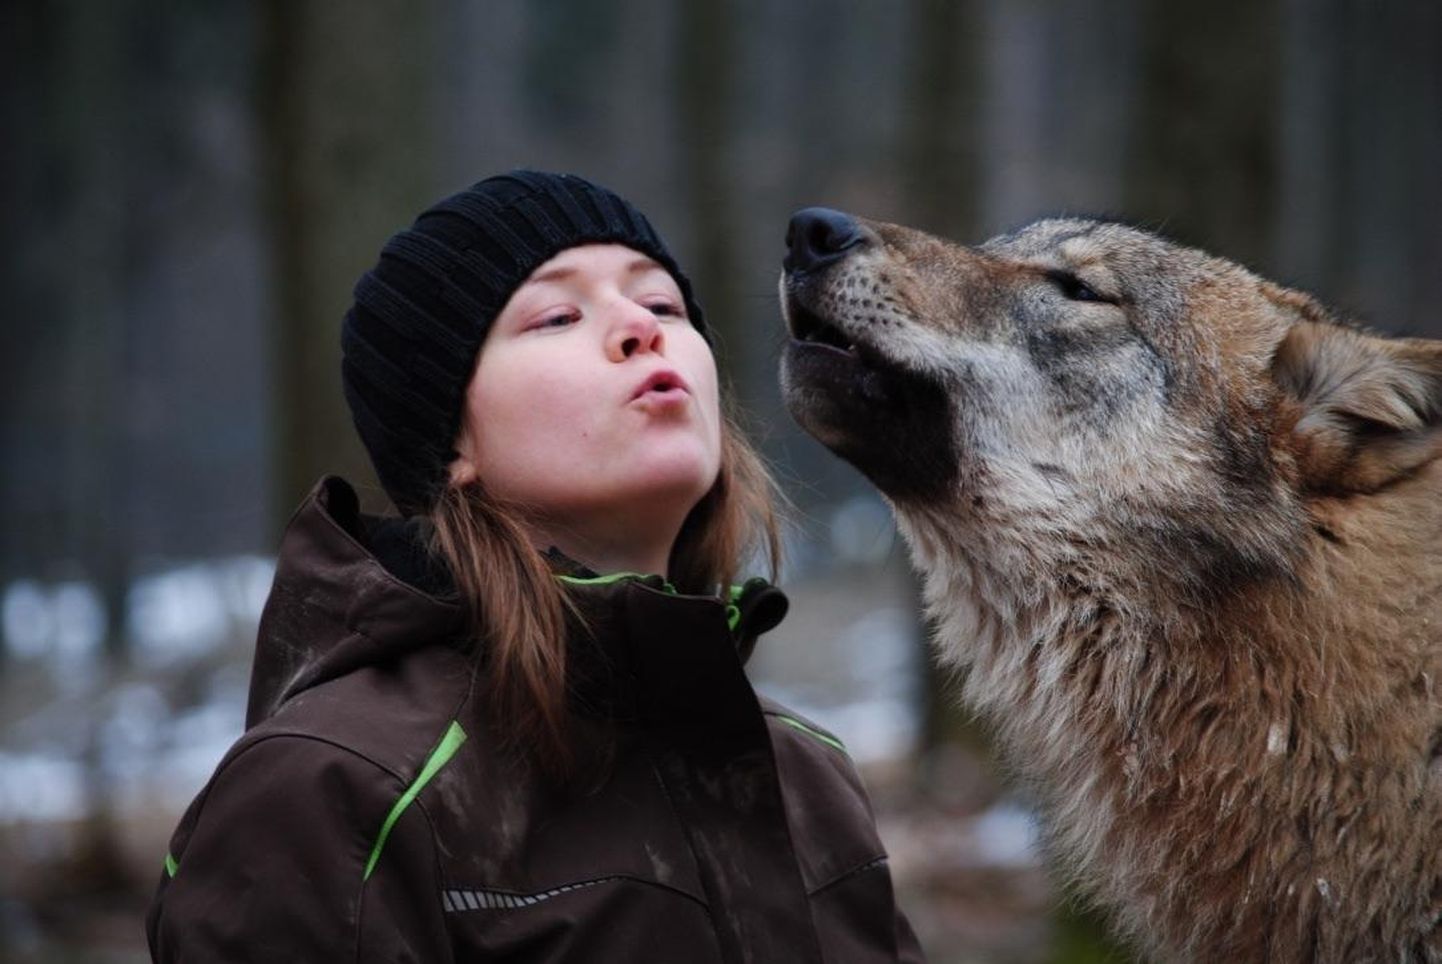 Laura Kiiroja õpib Kanadas doktorantuuris koerlaste käitumist ja kognitsiooni. Pilt on tehtud inimestega harjutatud hundiga Saksamaal Wildenburgi loomapargis. Kiiroja kuulus põhigruppi, kes seal hunte juba varasest east saati kasvatas.